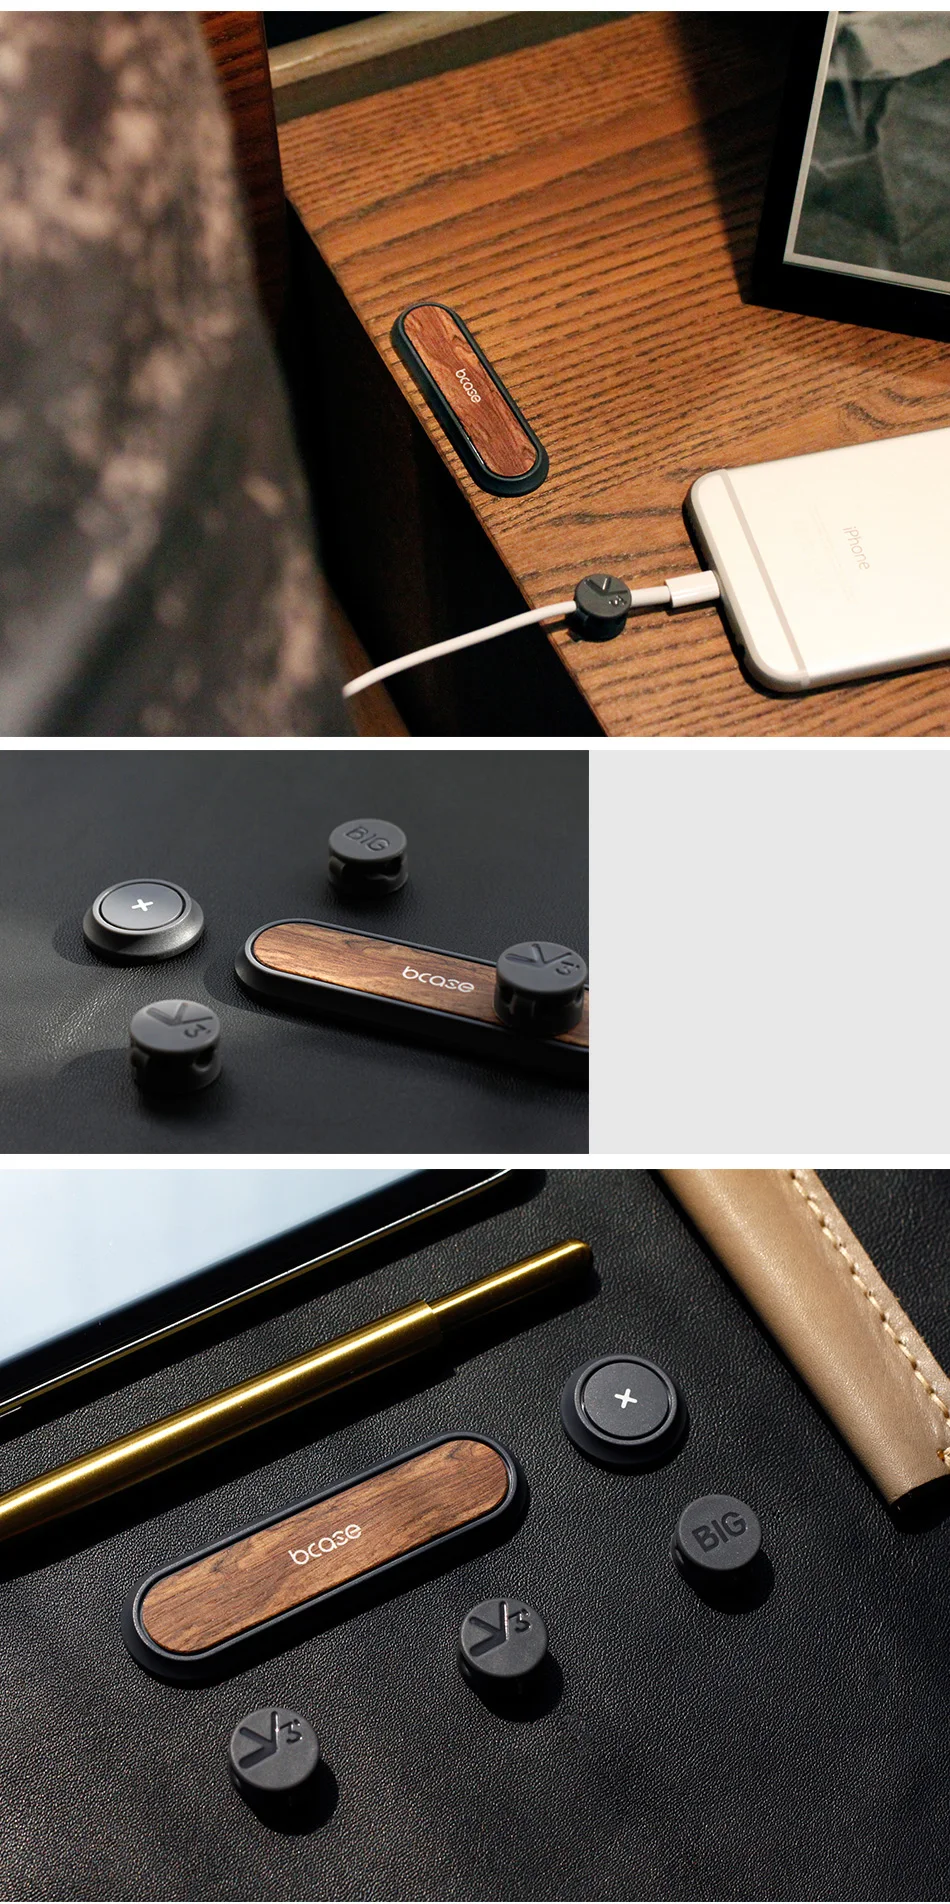 Xiaomi Bcase Магнитный кабель намотки провода Органайзер USB держатель кабельного зажима Сортировка инструмента рабочего места линия данных аккуратный инструмент